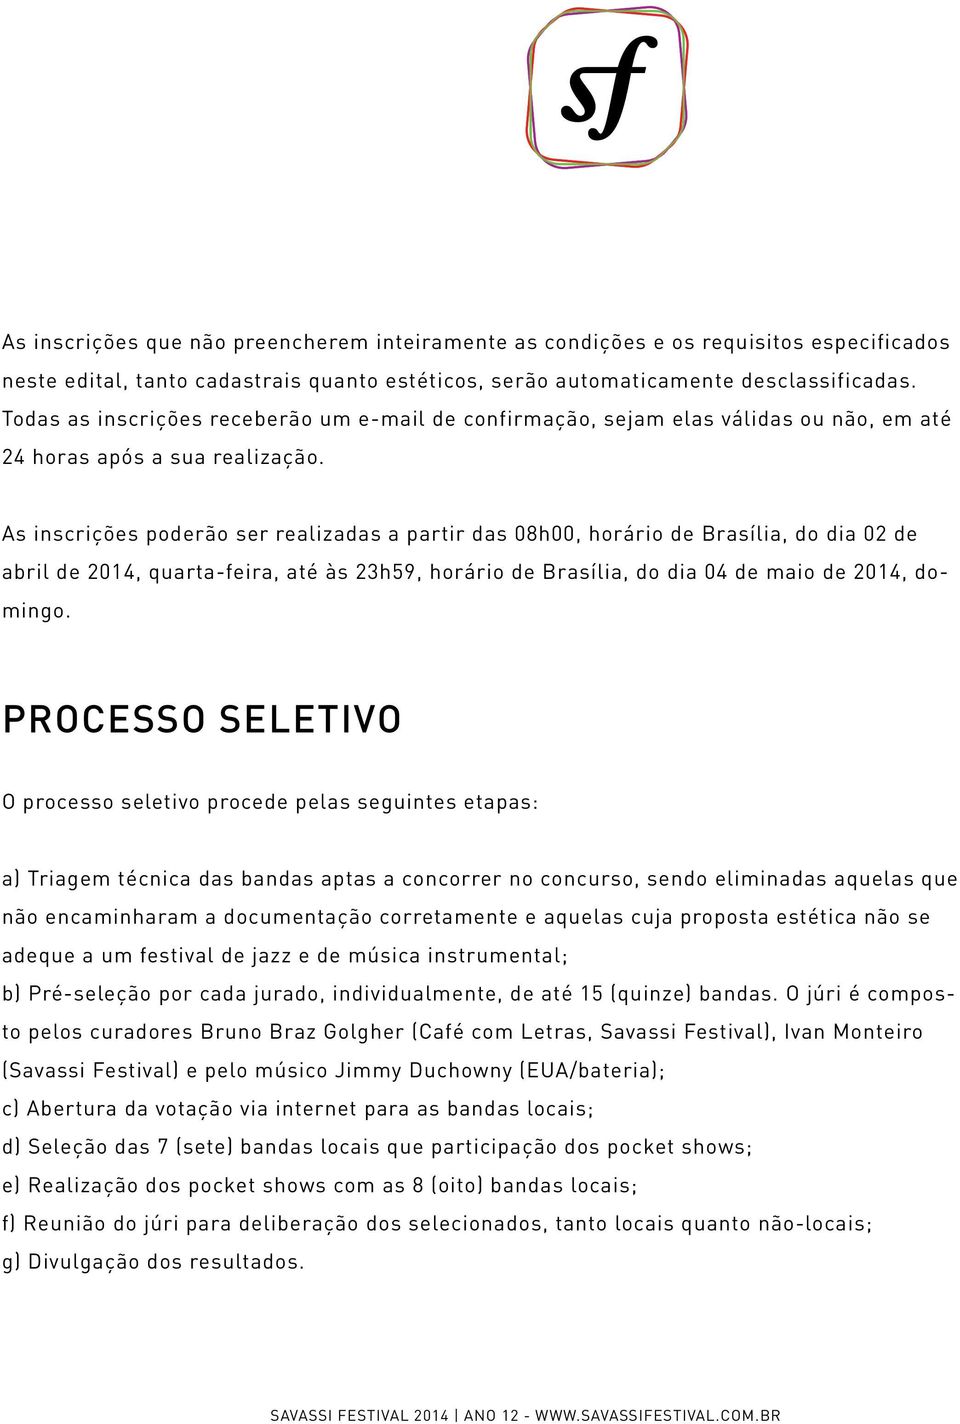 As inscrições poderão ser realizadas a partir das 08h00, horário de Brasília, do dia 02 de abril de 2014, quarta-feira, até às 23h59, horário de Brasília, do dia 04 de maio de 2014, domingo.